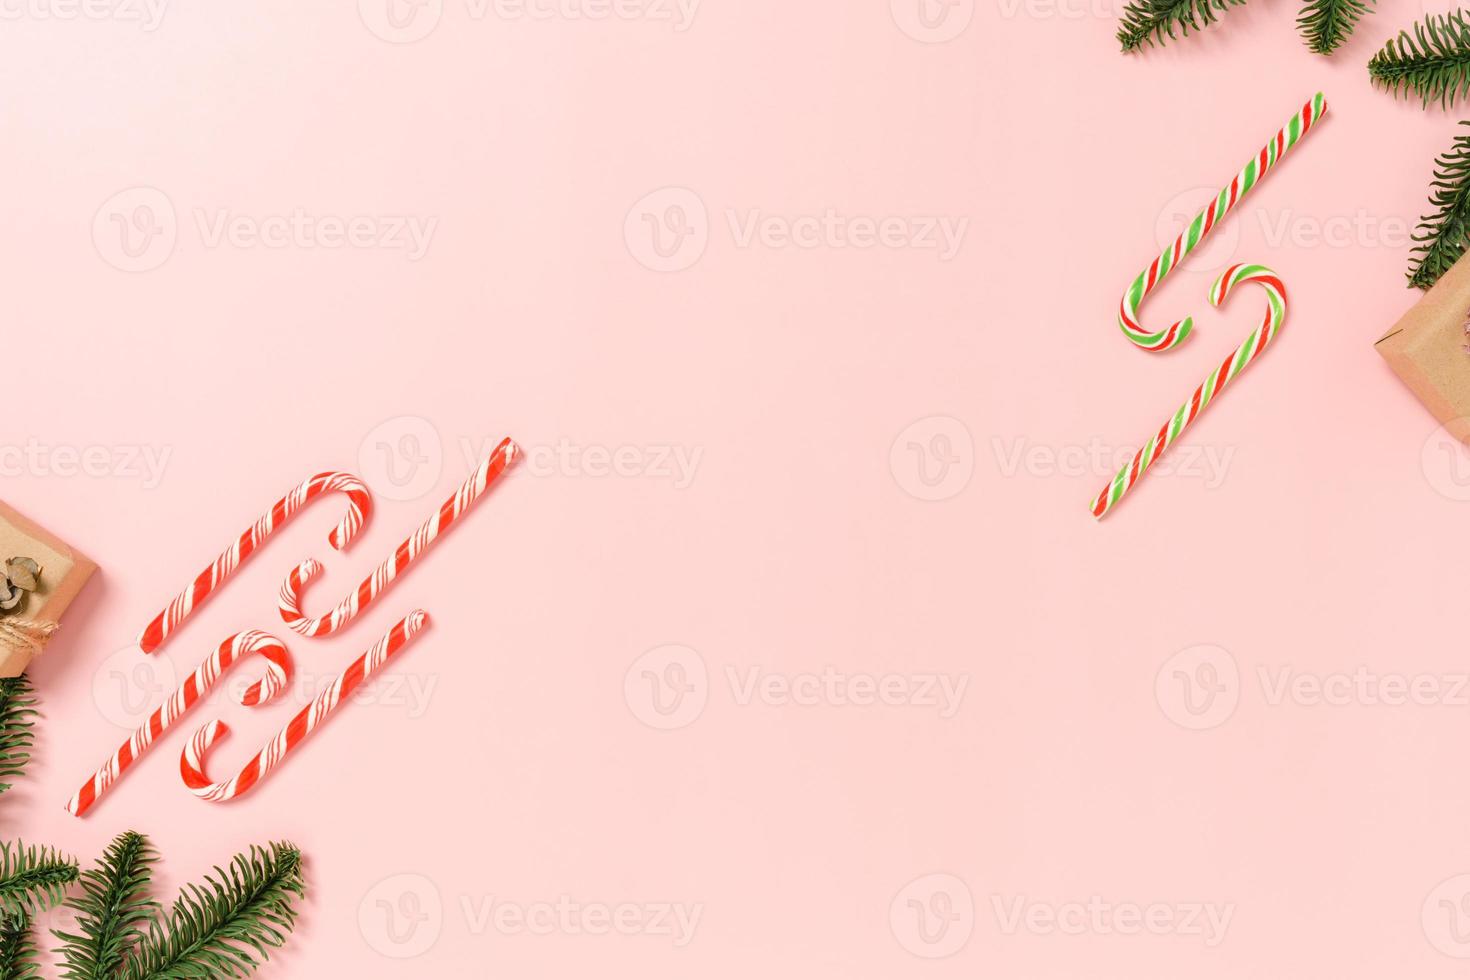 minima disposizione piatta creativa della composizione tradizionale natalizia e delle festività natalizie di capodanno. vista dall'alto decorazioni natalizie invernali su sfondo rosa con spazio vuoto per il testo. copia spazio fotografico. foto